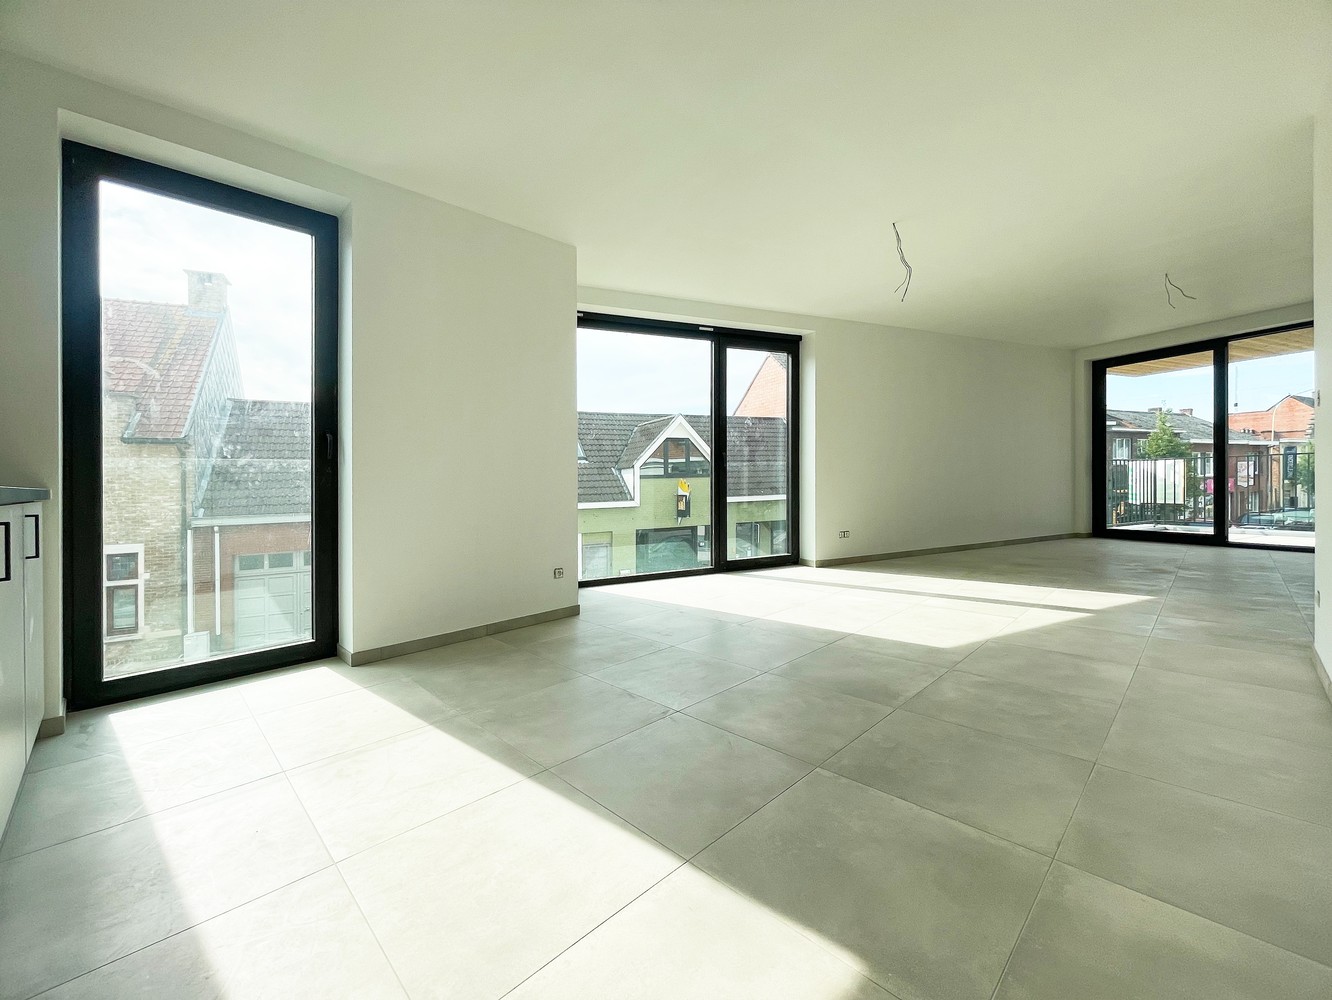 Lichtrijk appartement (84m²) met 2 slaapkamers en zuidgeoriënteerd terras! afbeelding 2